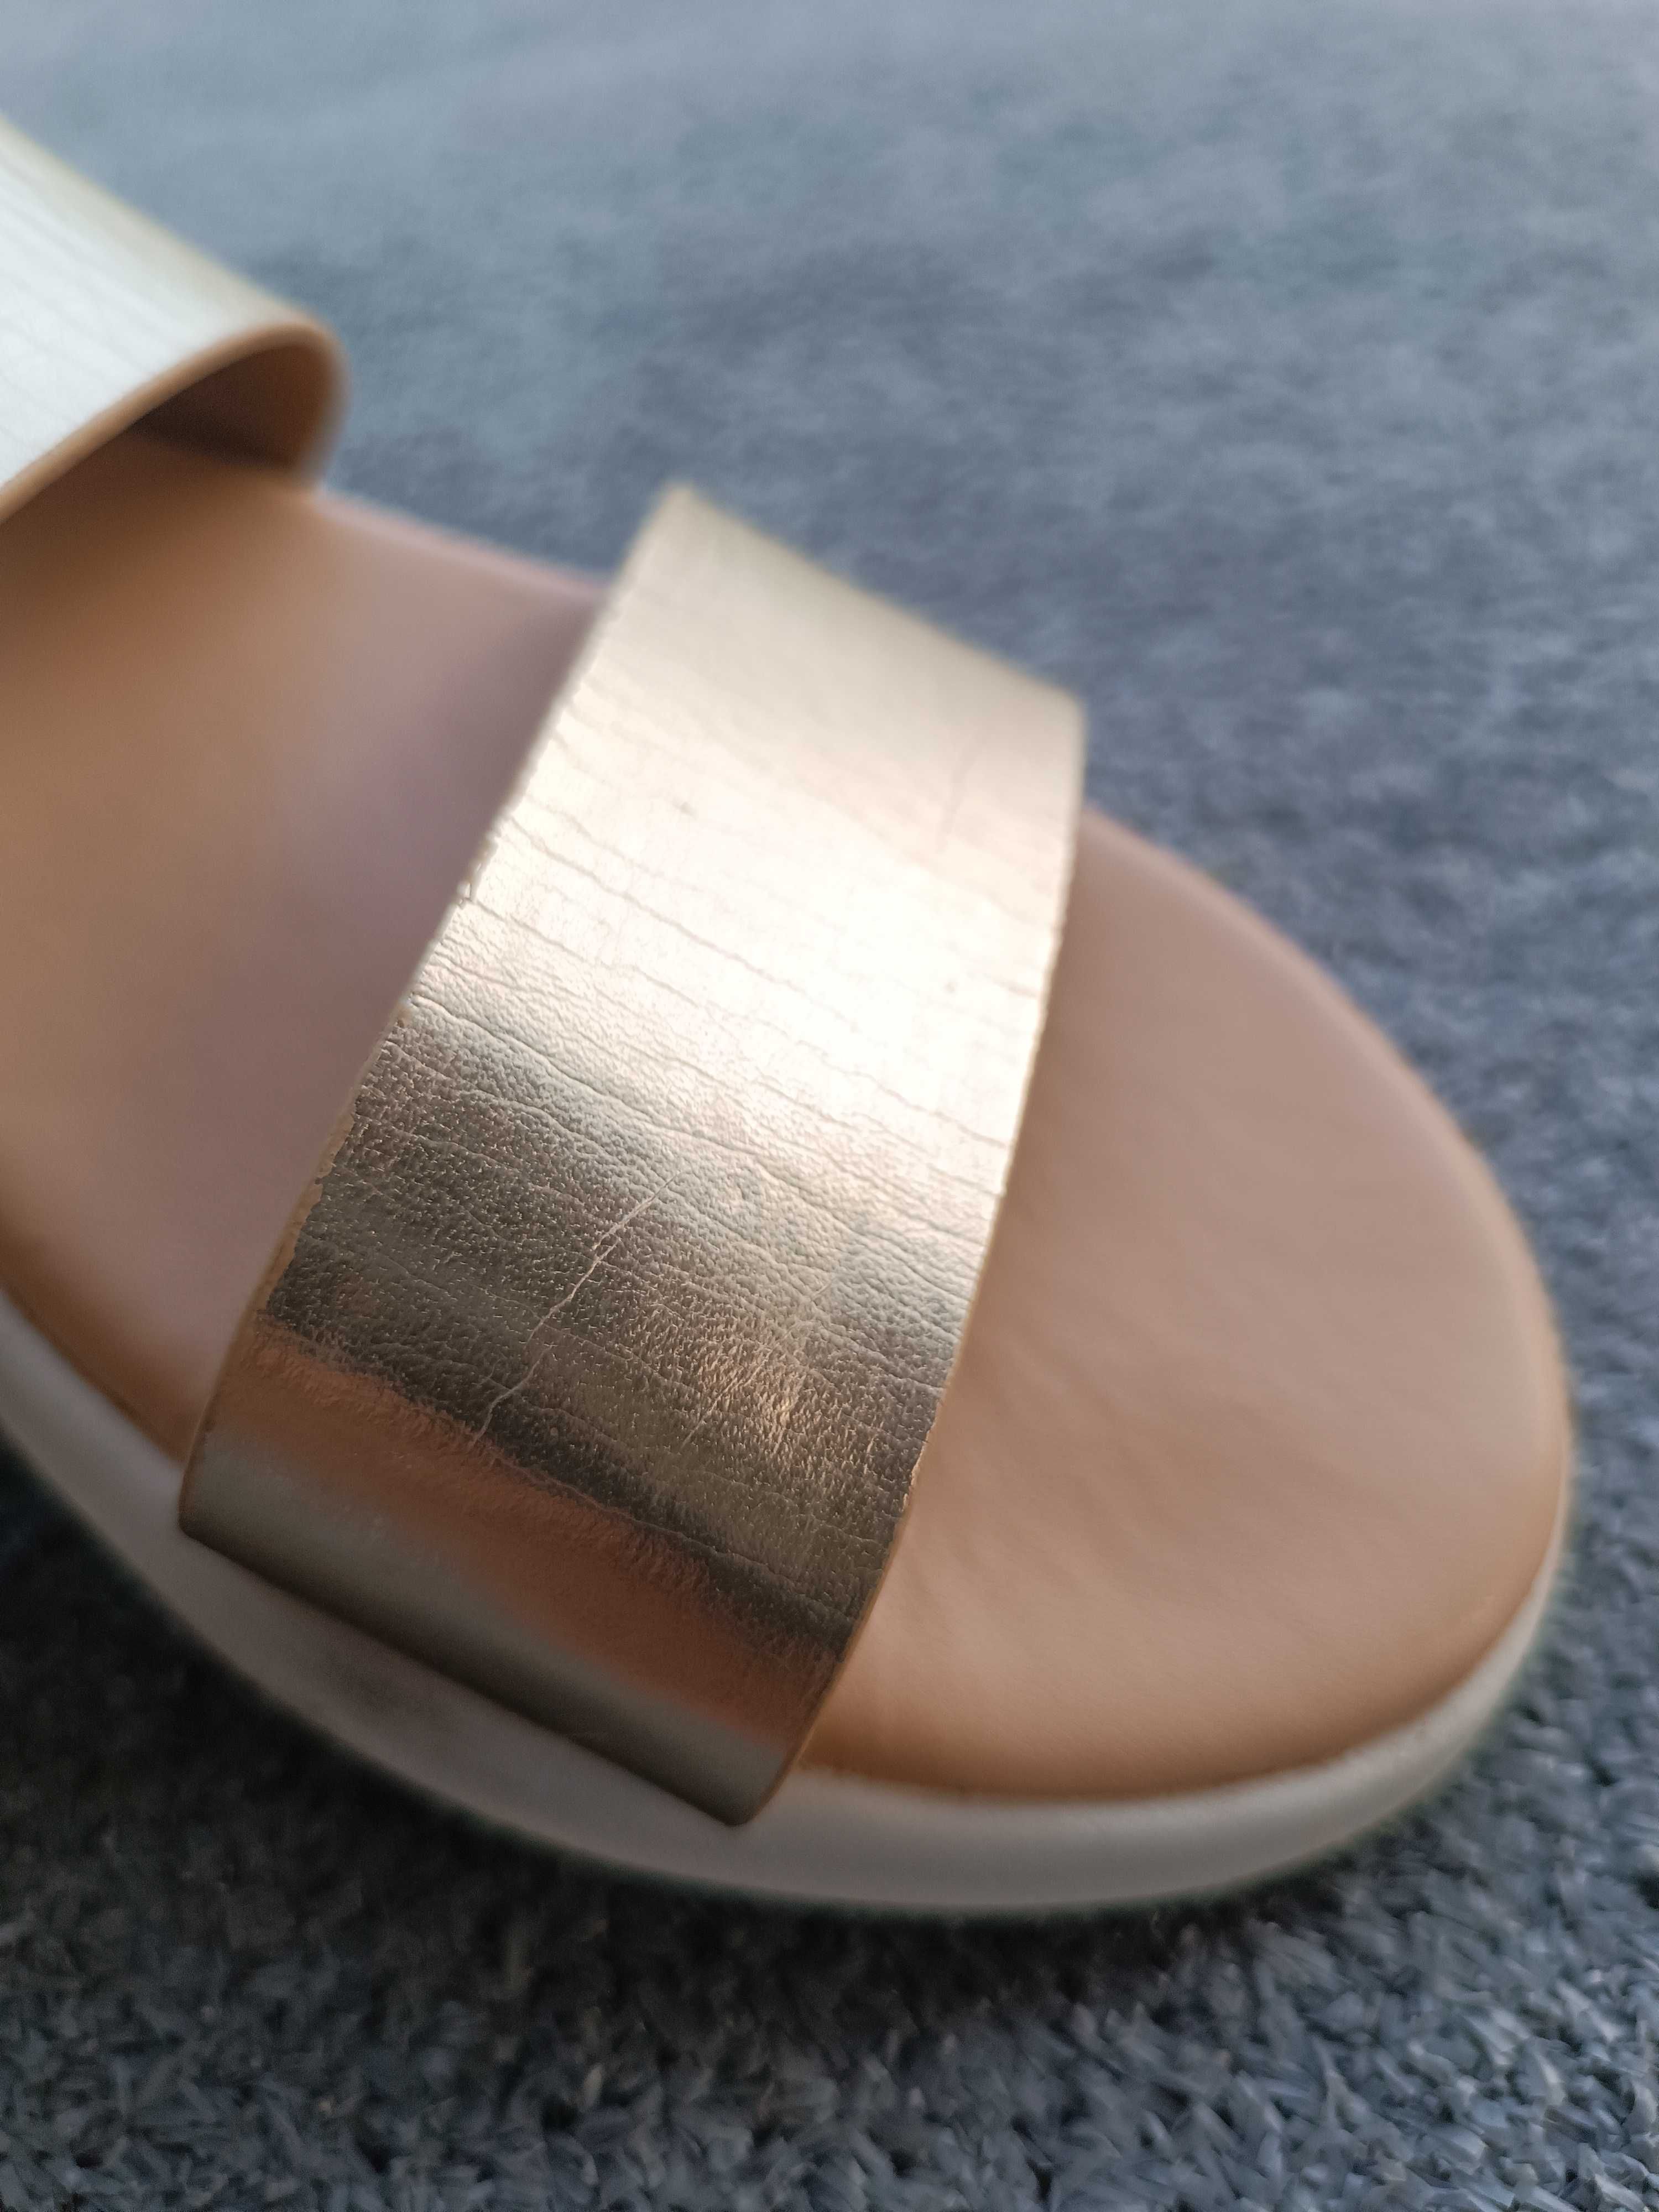 Sandały damskie złote używane Primark, rozmiar 37  (wkładka 24 cm)